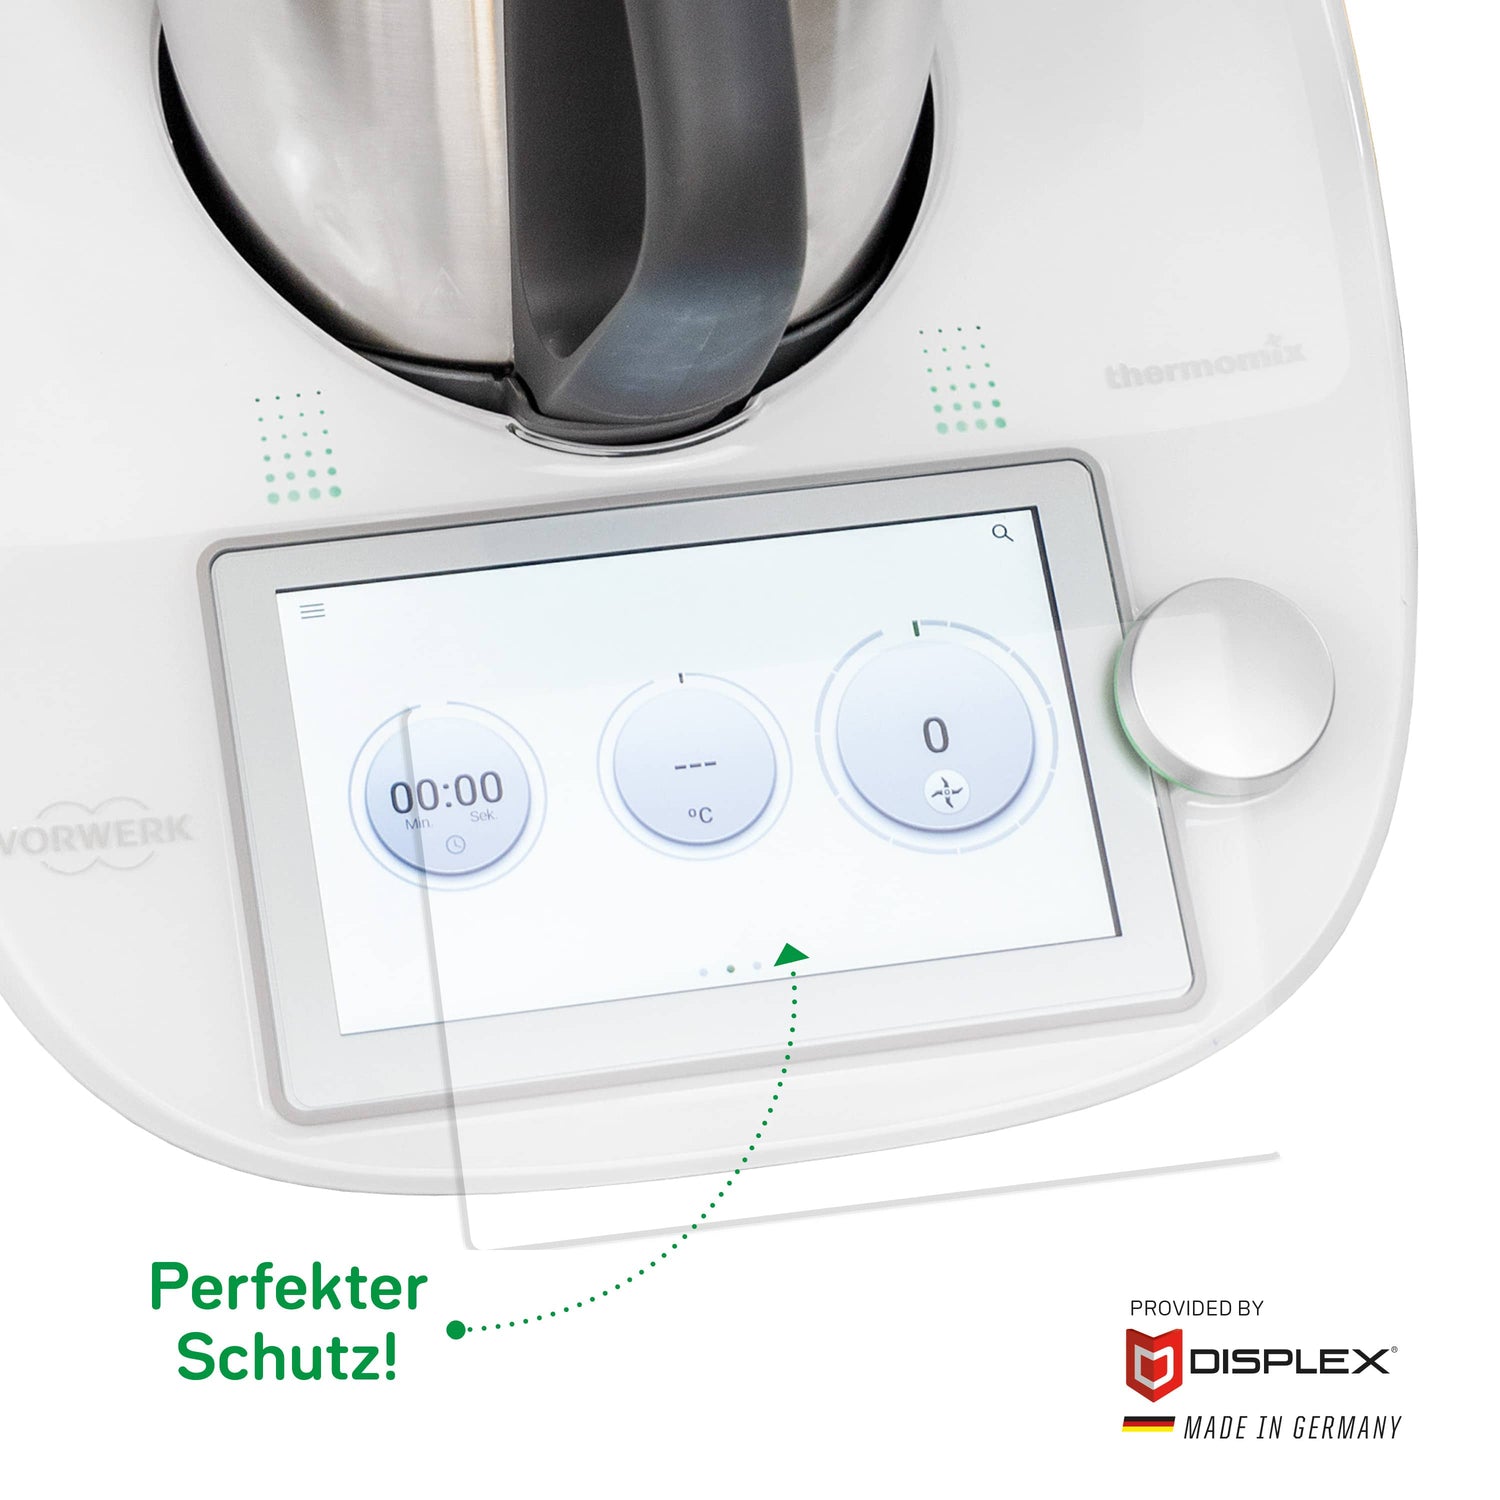 First Class Schutz für Euer Thermomix Display - Wundermix GmbH